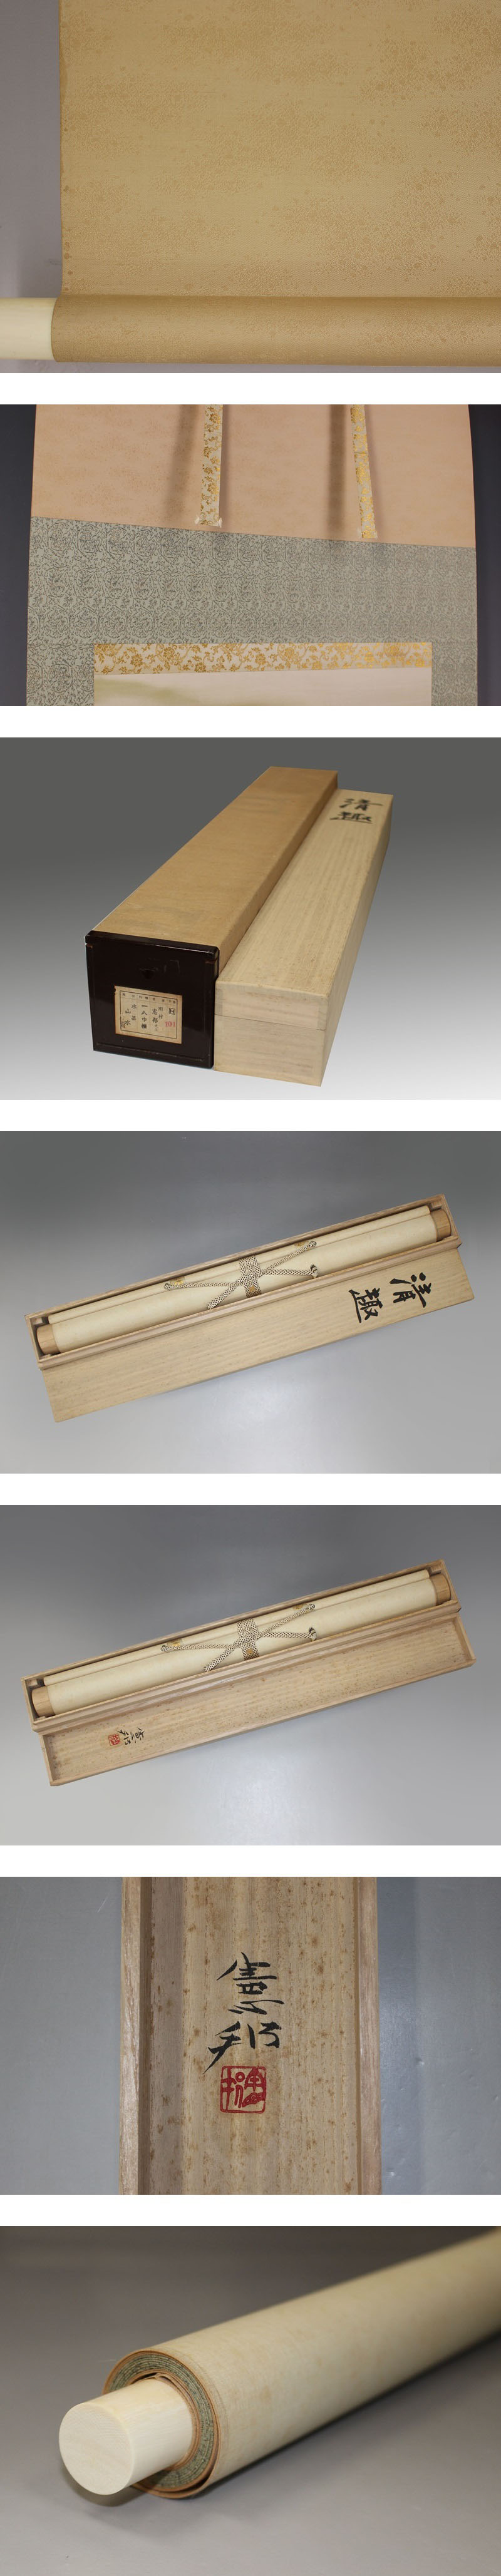 【日本王者】川村憲邦◆絹本◆共箱◆太巻◆二重箱◆掛軸 1606057 山水、風月